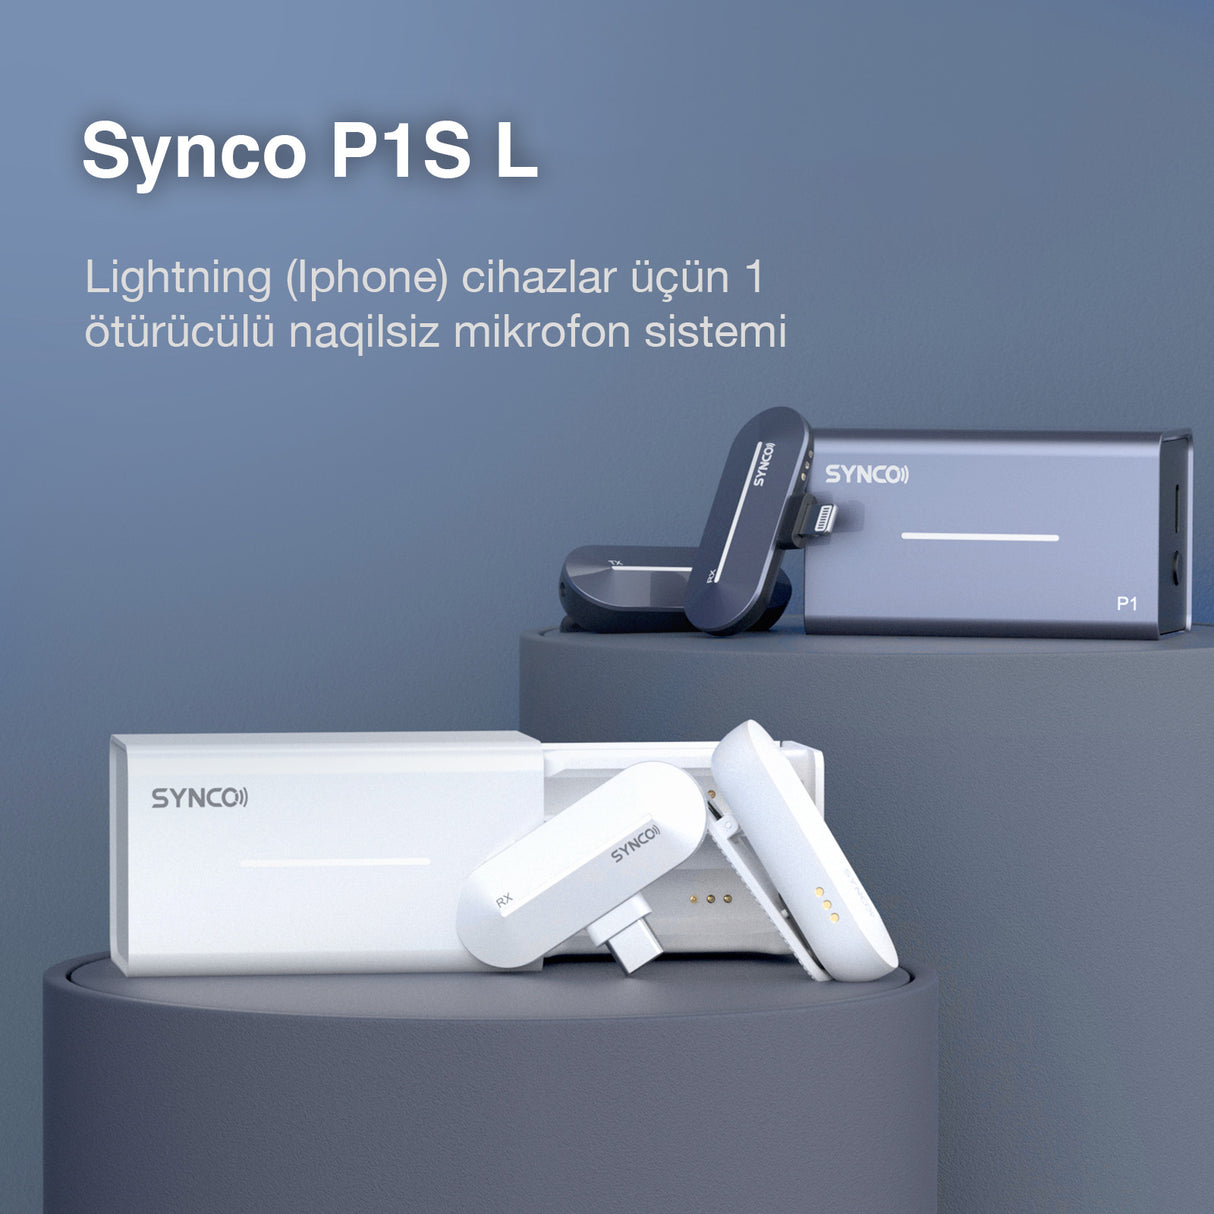 Synco P1S L